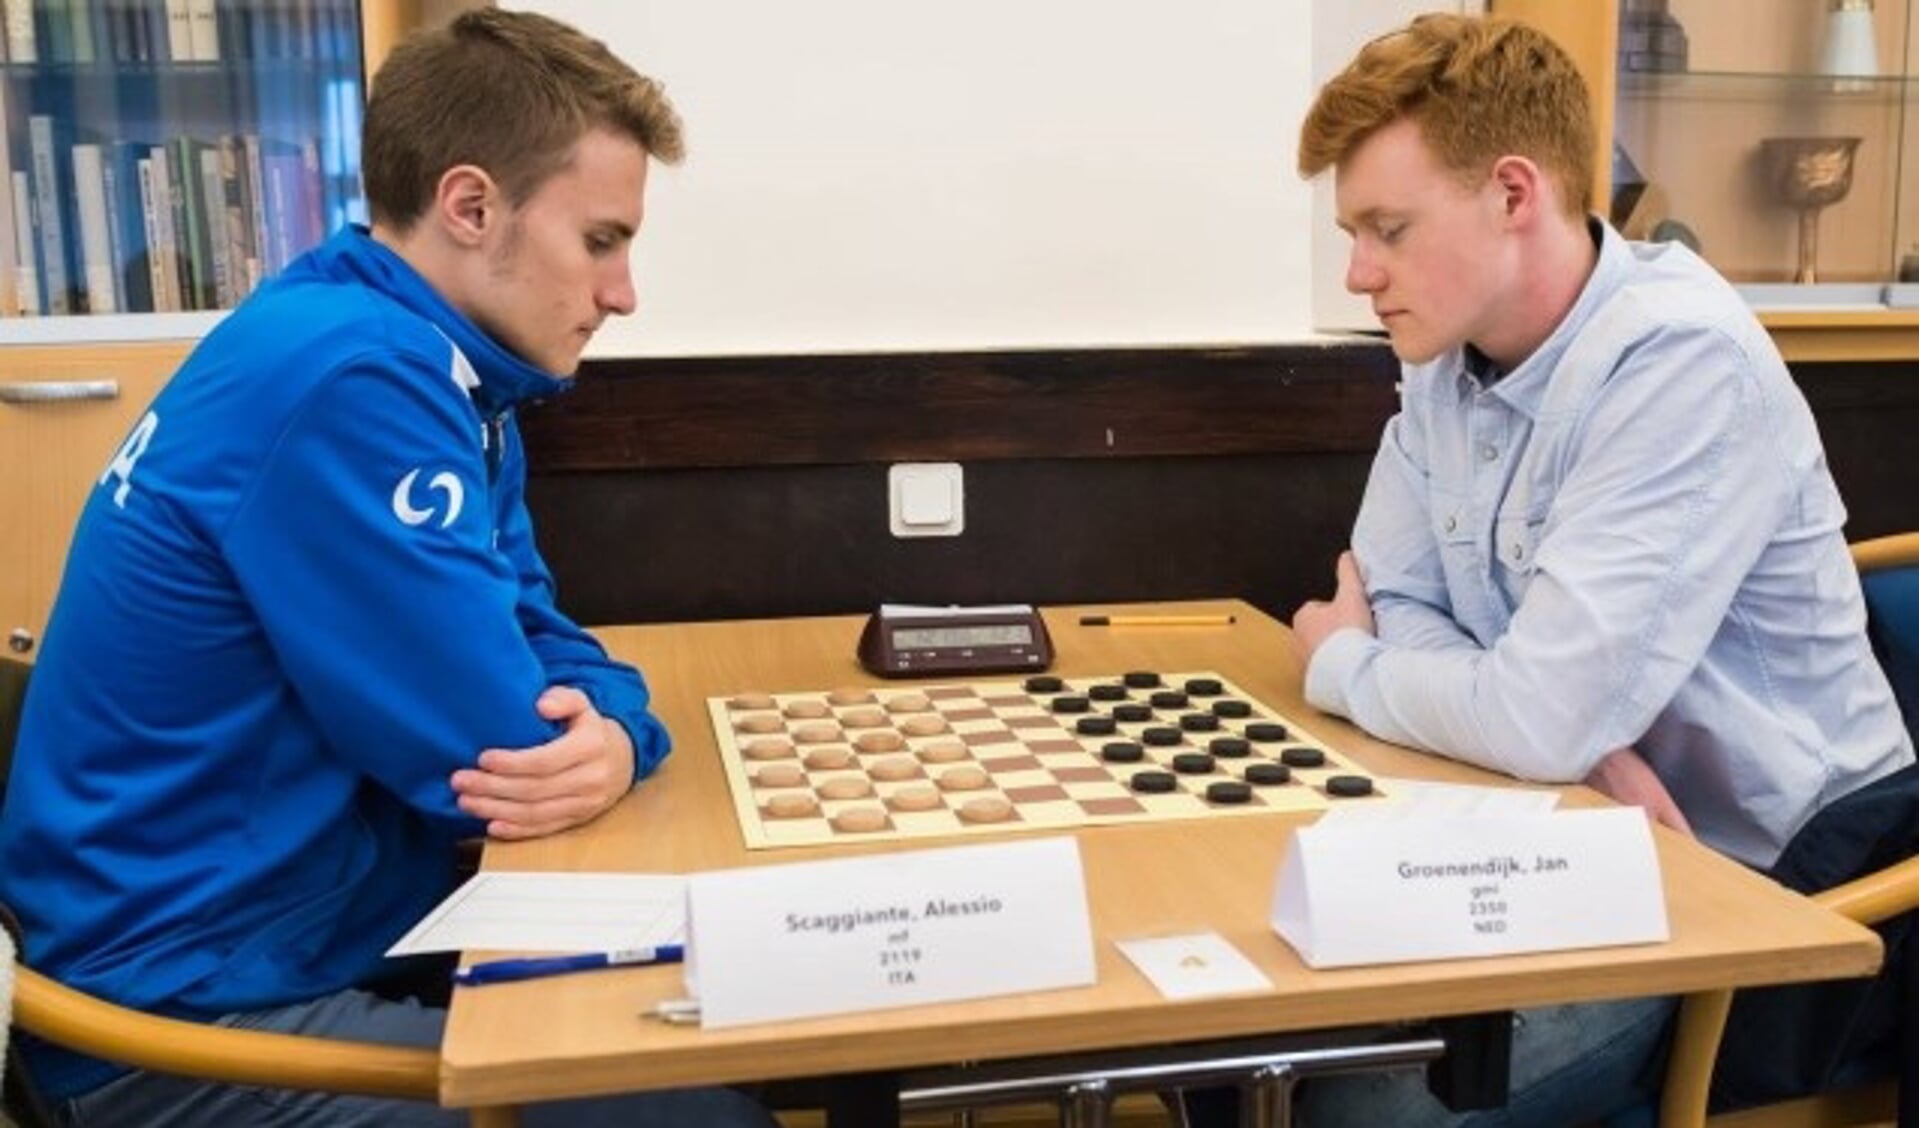 De laatste ronde: Jan Groenendijk (rechts) in opperste concentratie tegen Alessio Scaggiante. (foto: Heike Verheul)